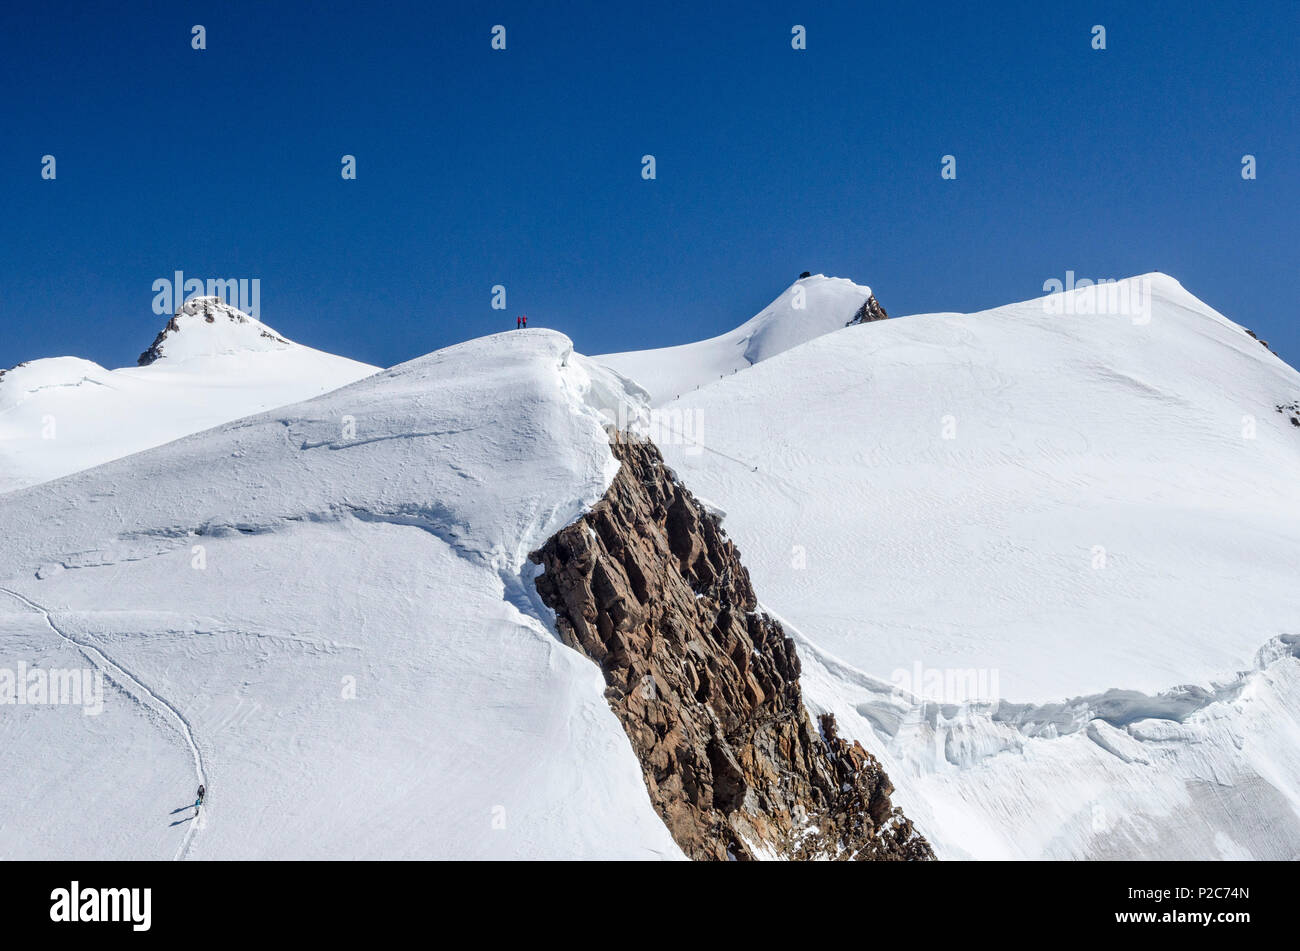 Deux alpinistes debout sur le sommet de l'Ludwigshoehe, derrière eux quatre personnes escalade Parrotspitze, dans l'arrière-plan t Banque D'Images